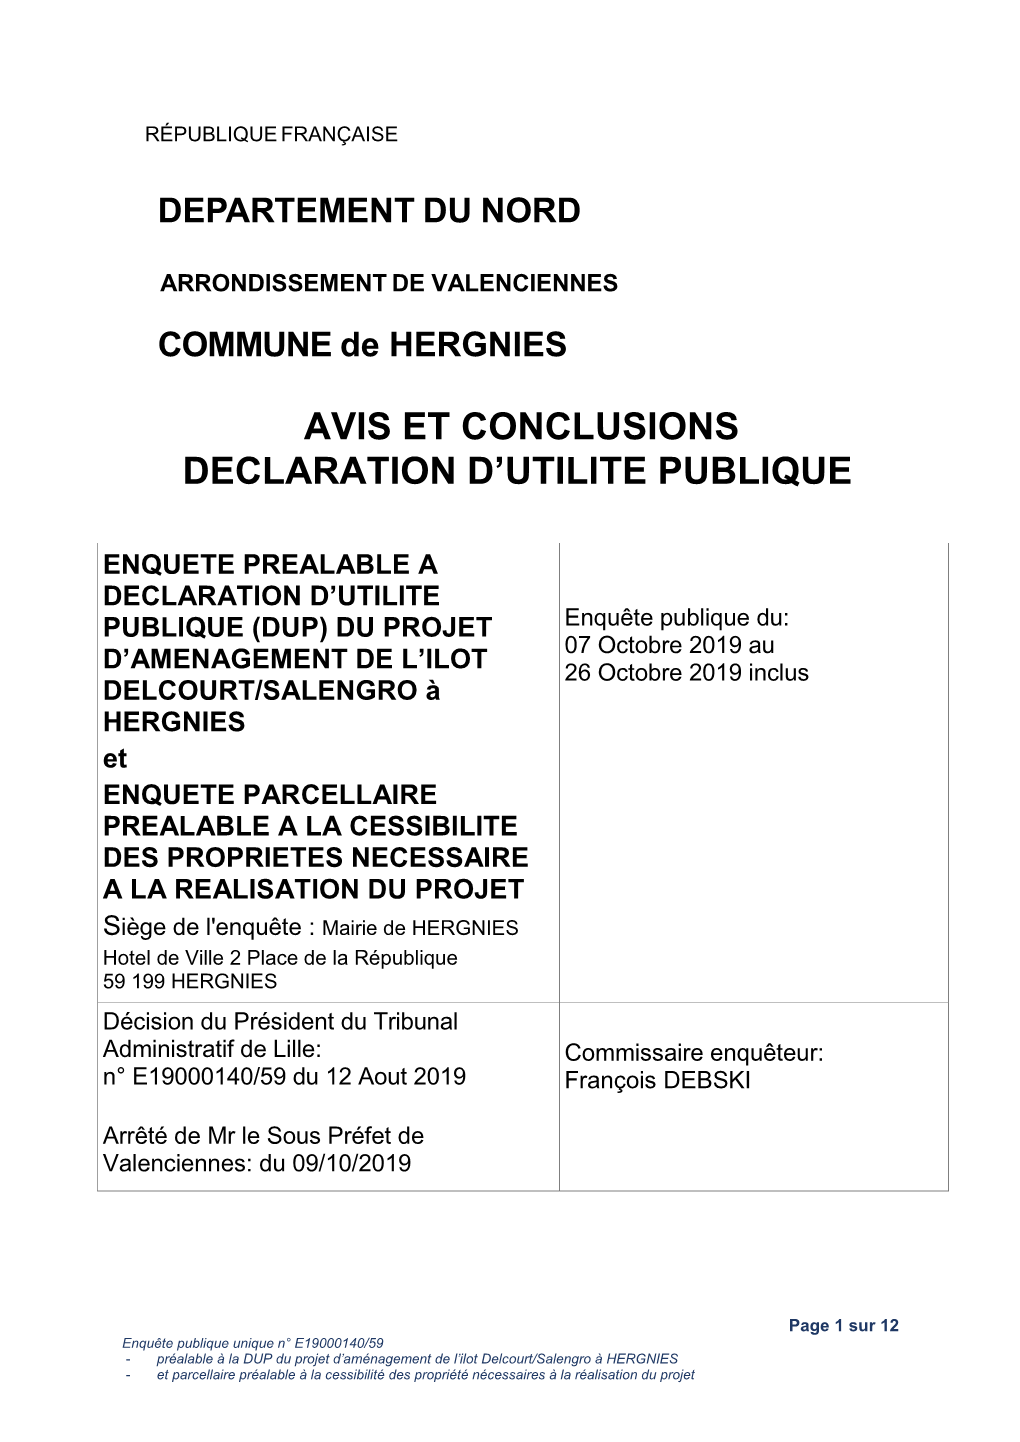 Avis Et Conclusions Declaration D’Utilite Publique